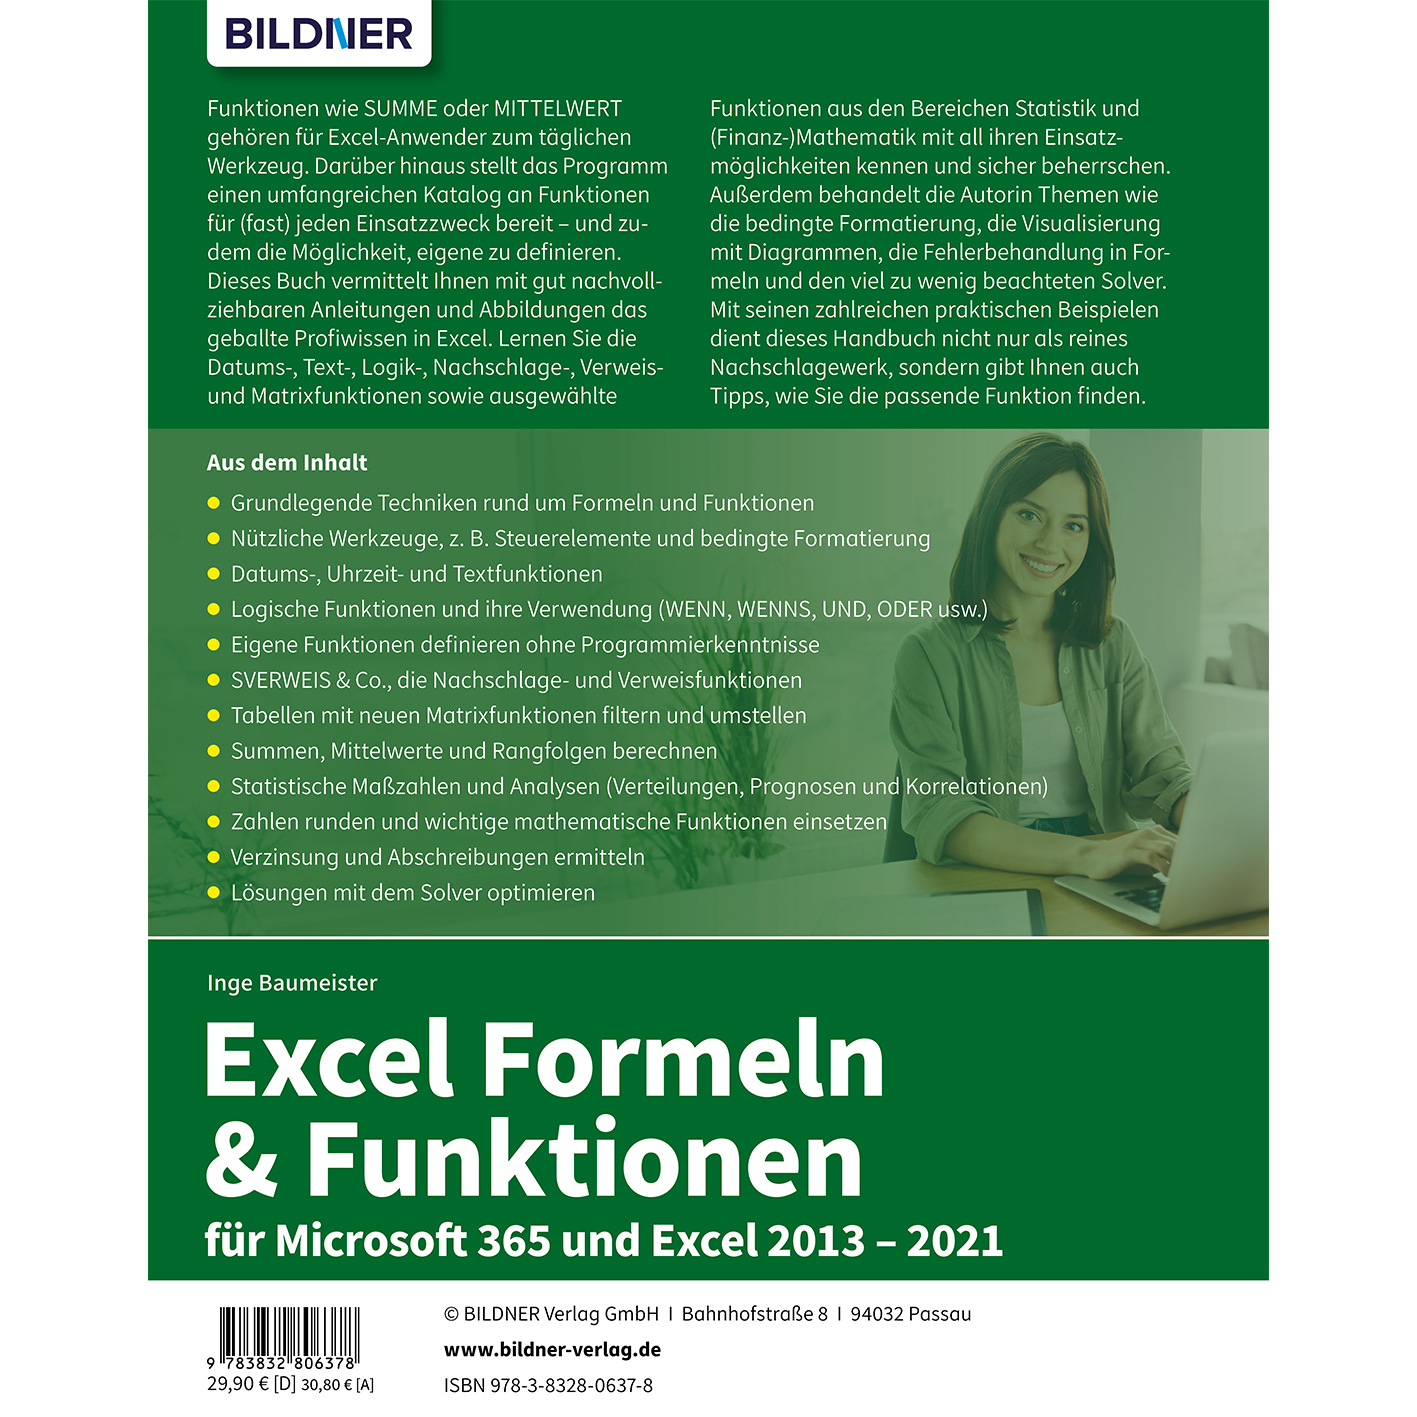 Excel Formeln & Microsoft für 365 und Excel 2013-2021 Funktionen